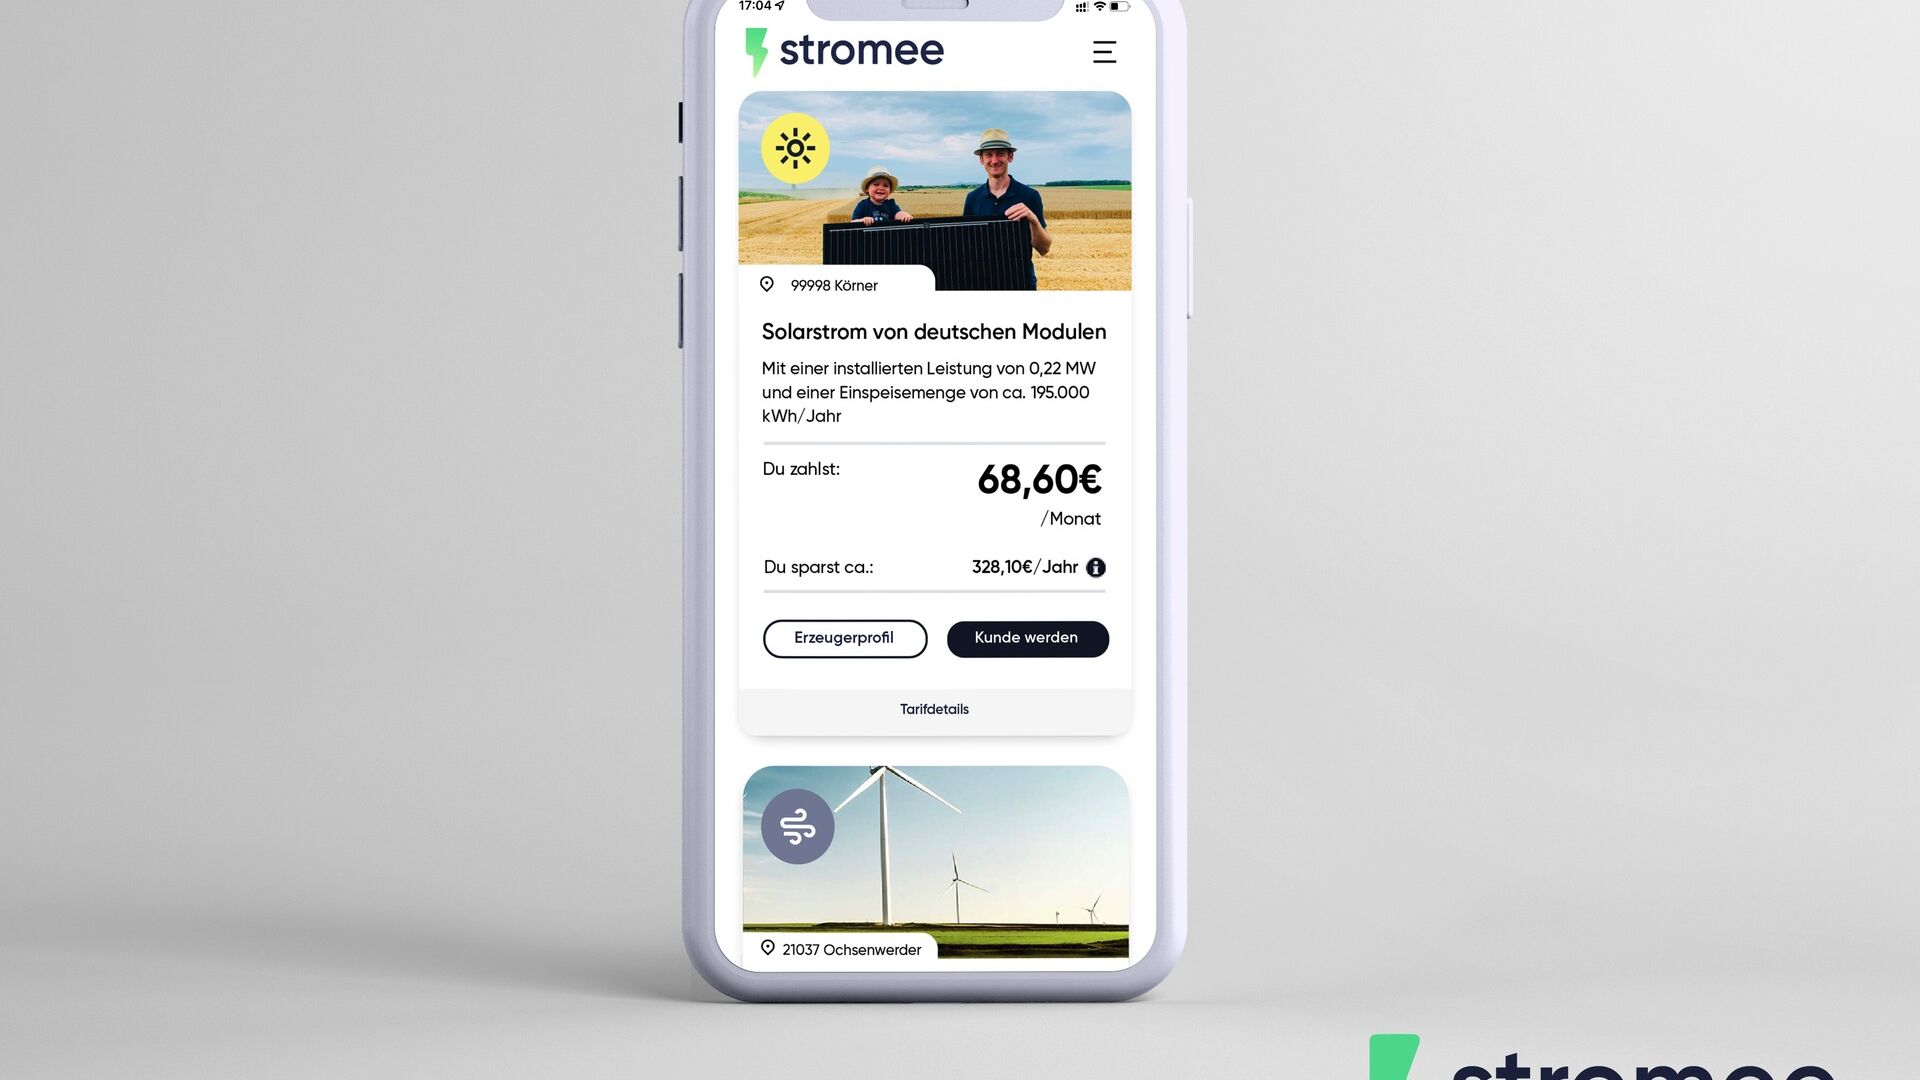 जर्मनी: स्मार्टफोन पर स्ट्रोमी कंपनी का ऐप